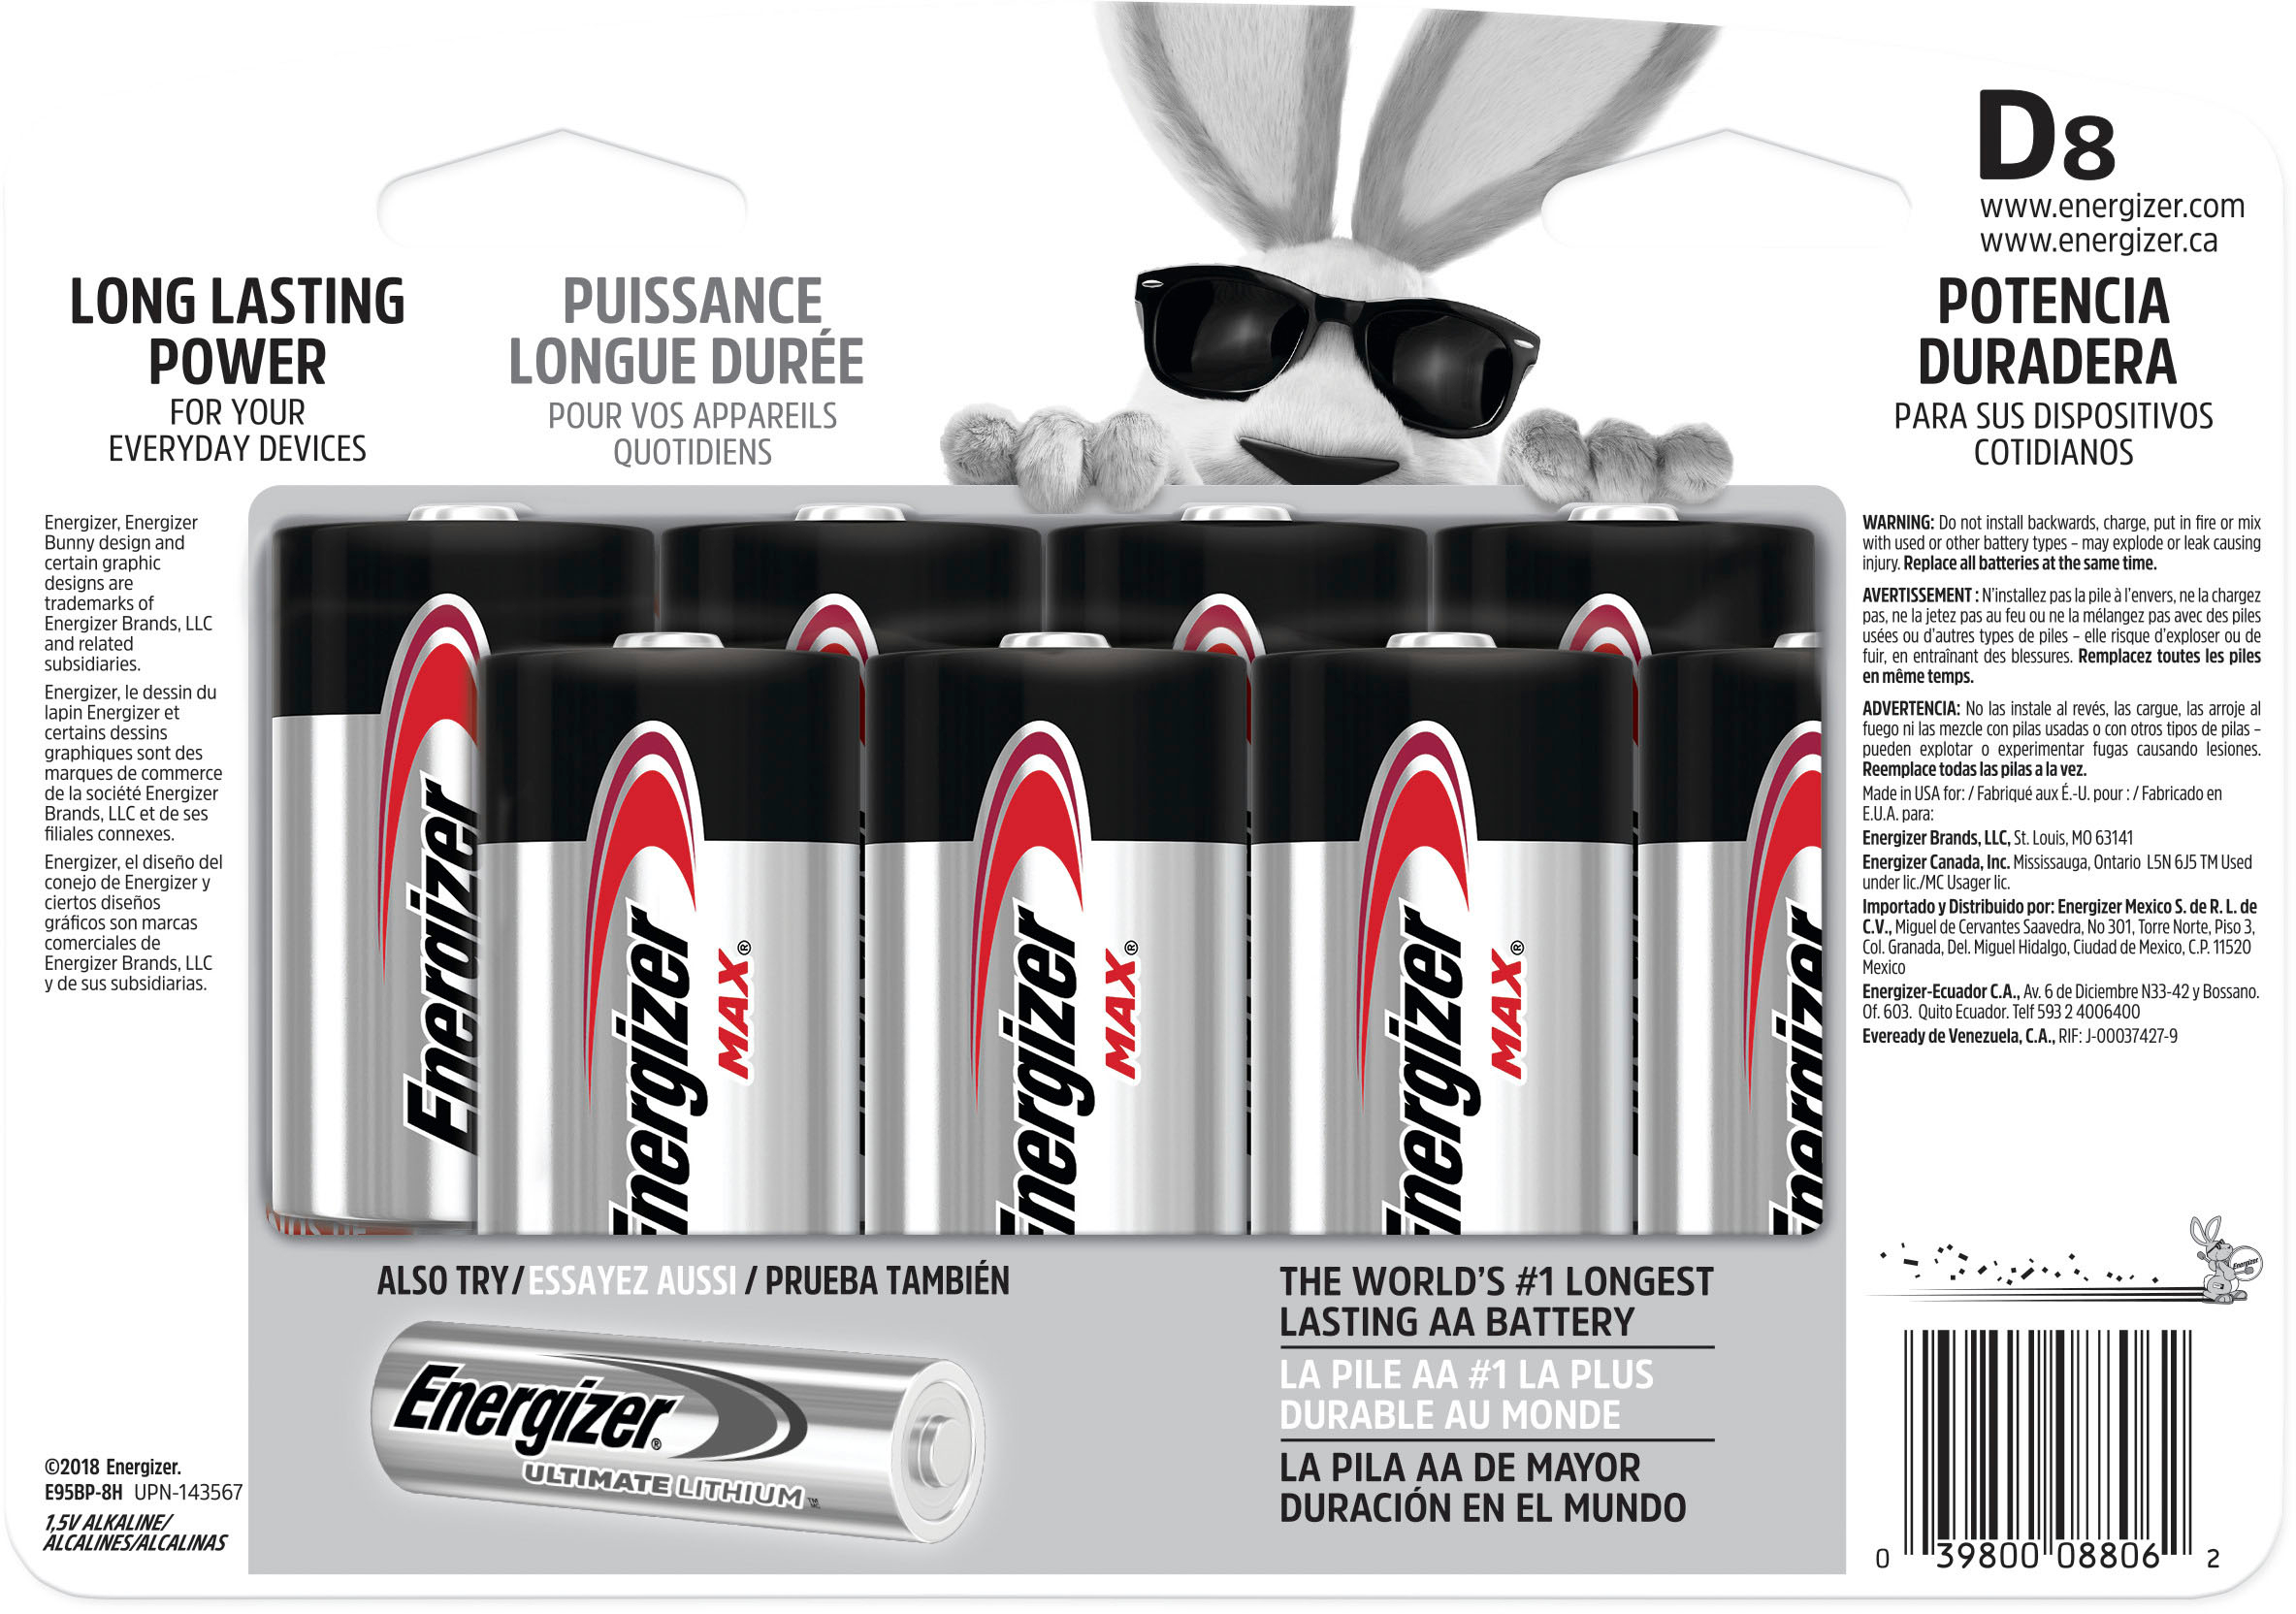 Energizer Max Alkaline Battery Size D, Bateri Size D